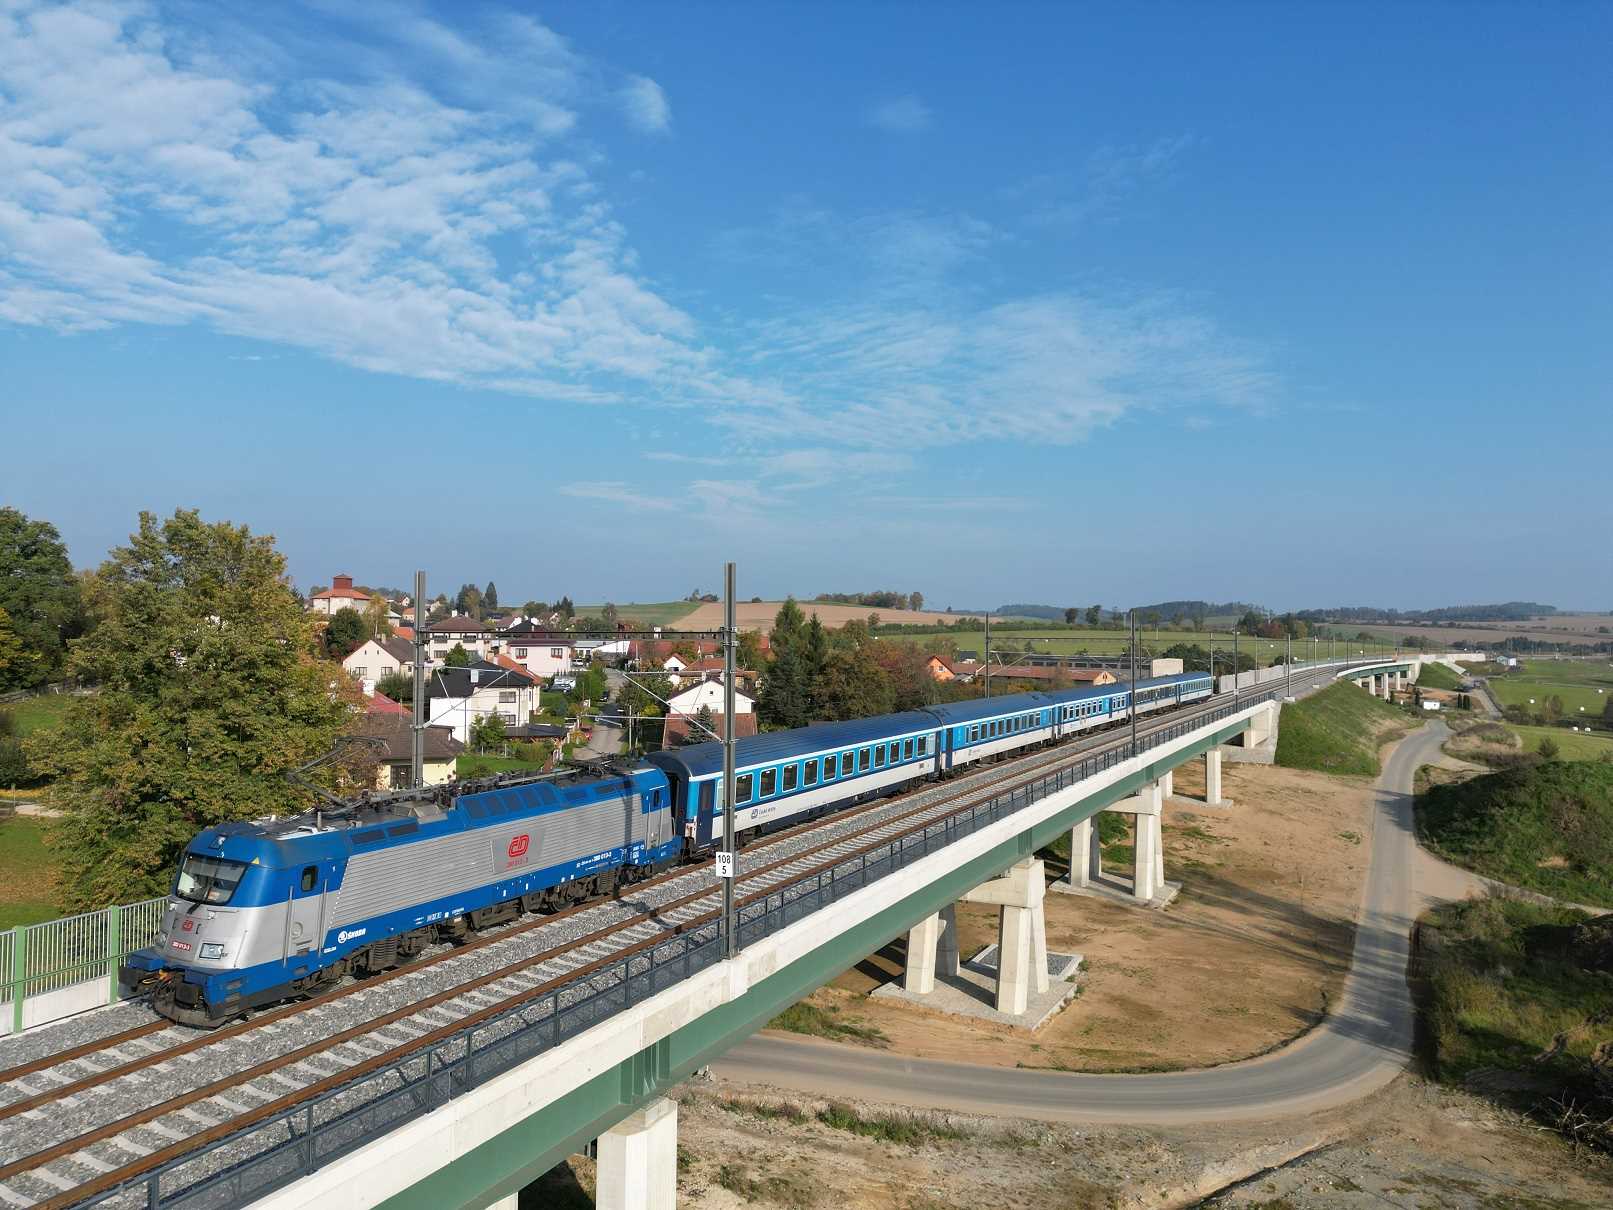 Expresy a rychlíky mezi Prahou a Českými Budějovicemi jezdí od 11. prosince 2022 v rekordně krátkých cestovních časech.